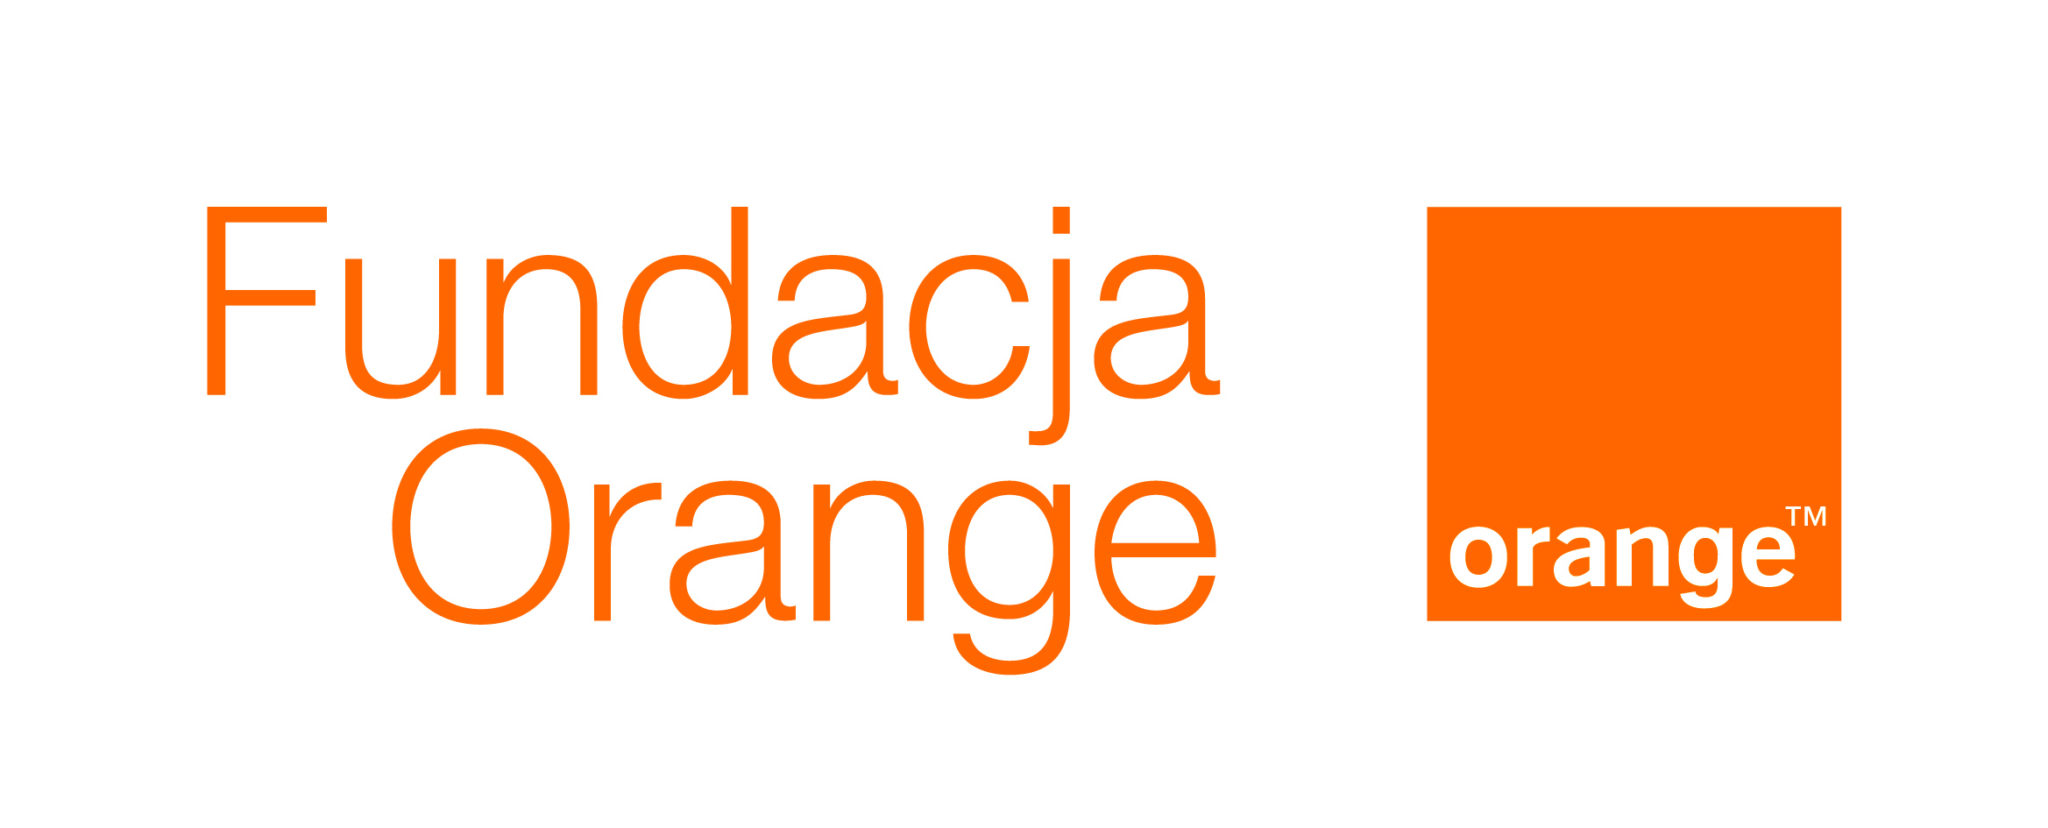 Displaying Fundacja Orange.jpg